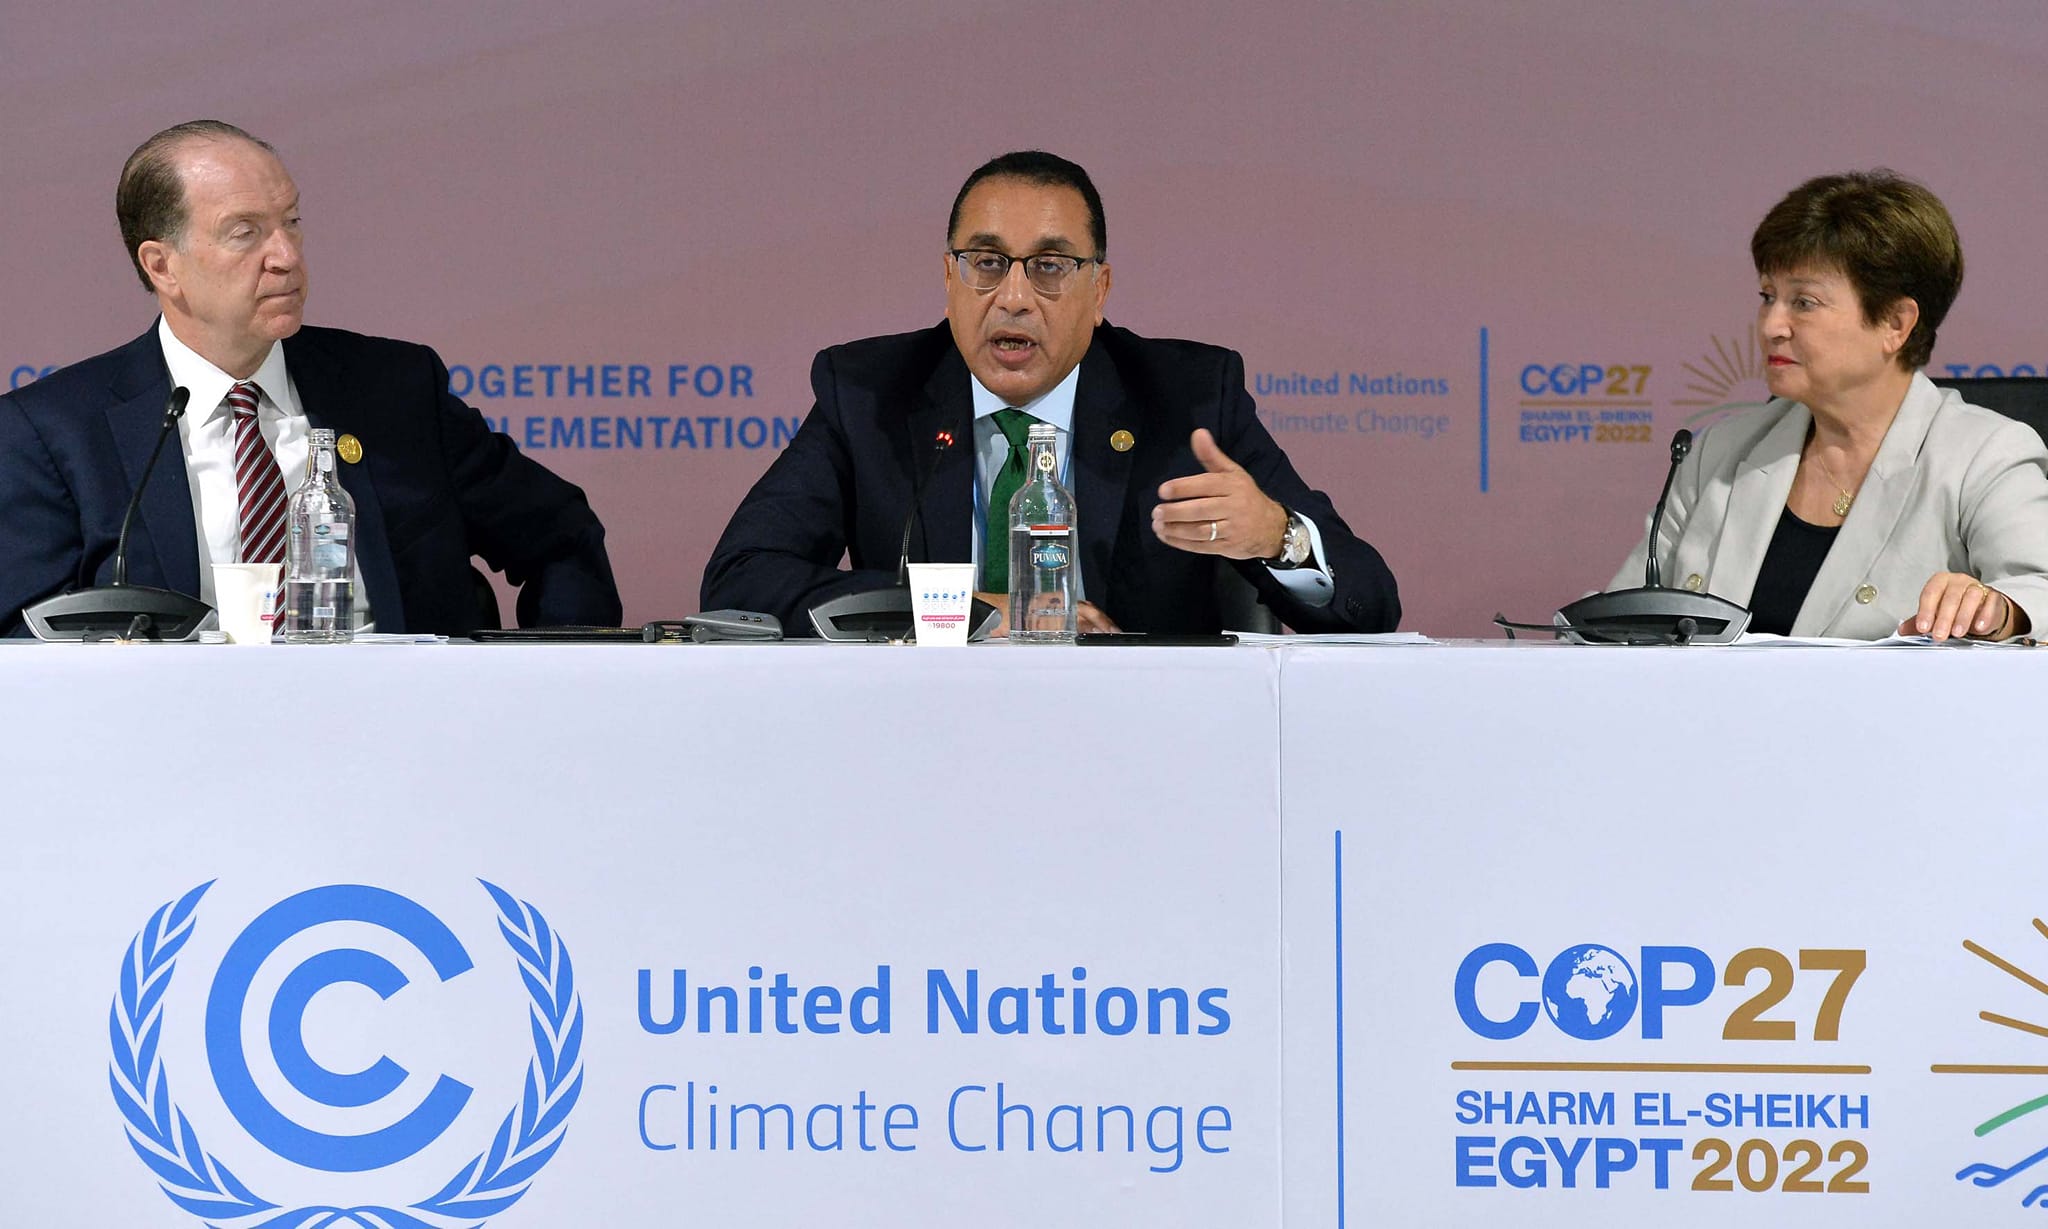 د. مصطفى مدبولي يلقي كلمته في افتتاح "يوم التمويل" في قمة المناخ